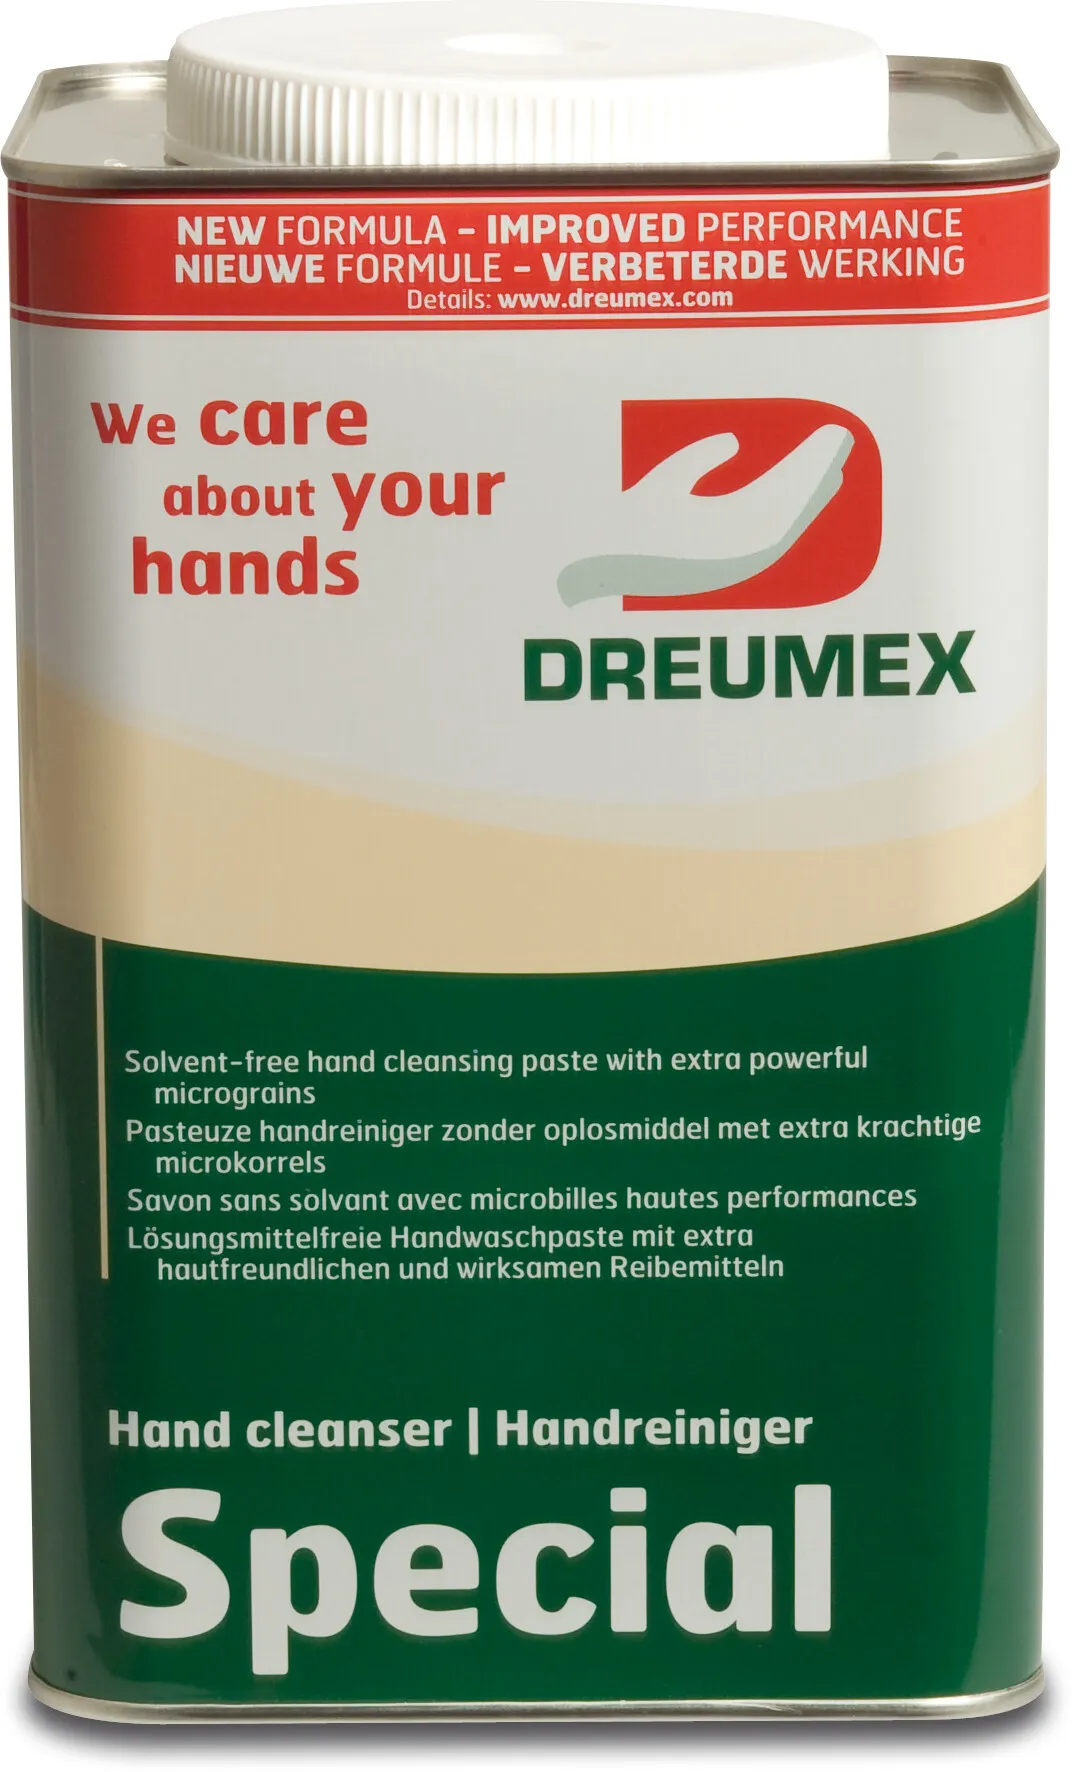 Dreumex Handreiniger Creme type Special 4.2 Kg